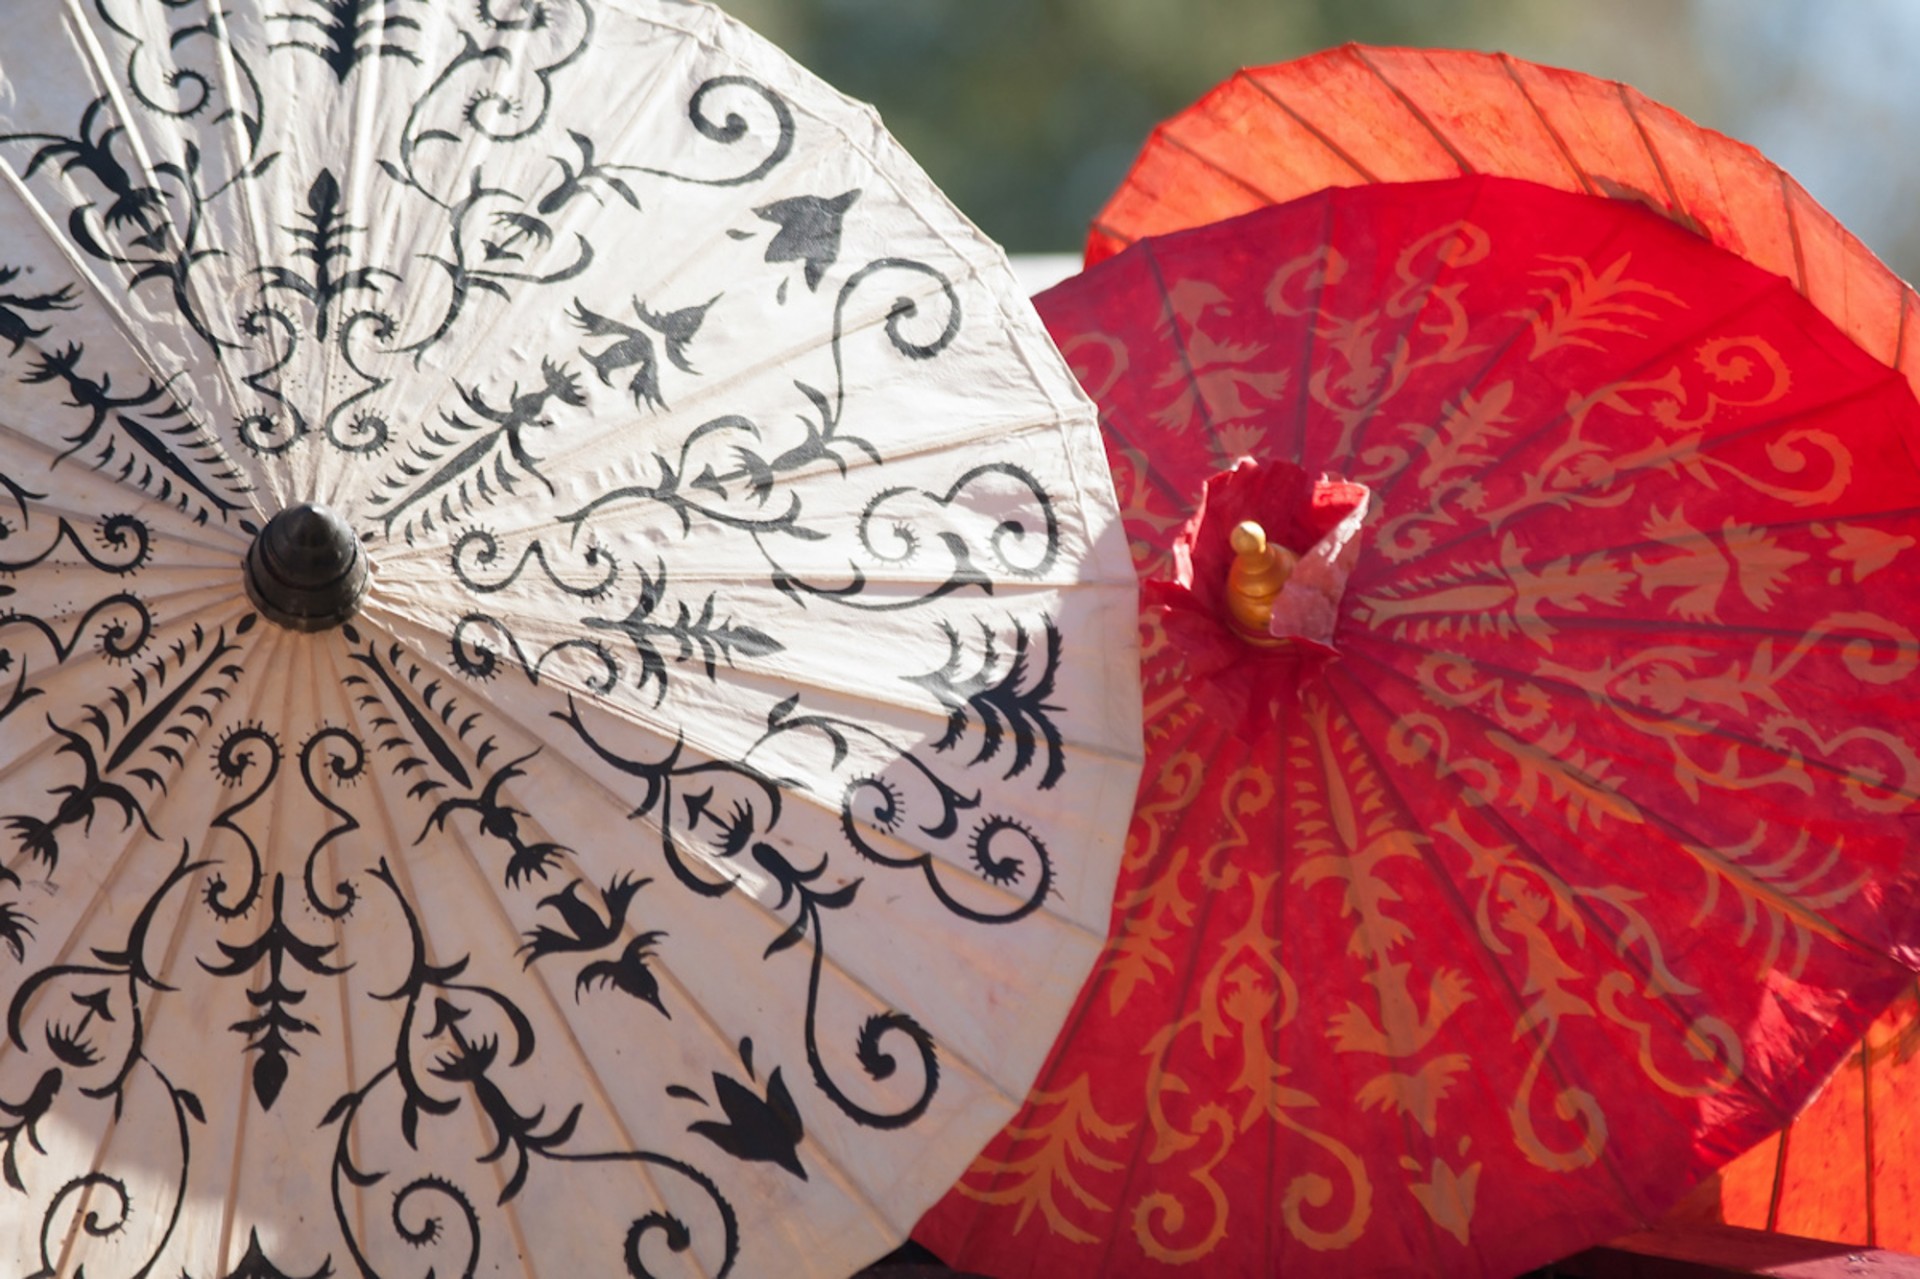 Asiatische Schirme